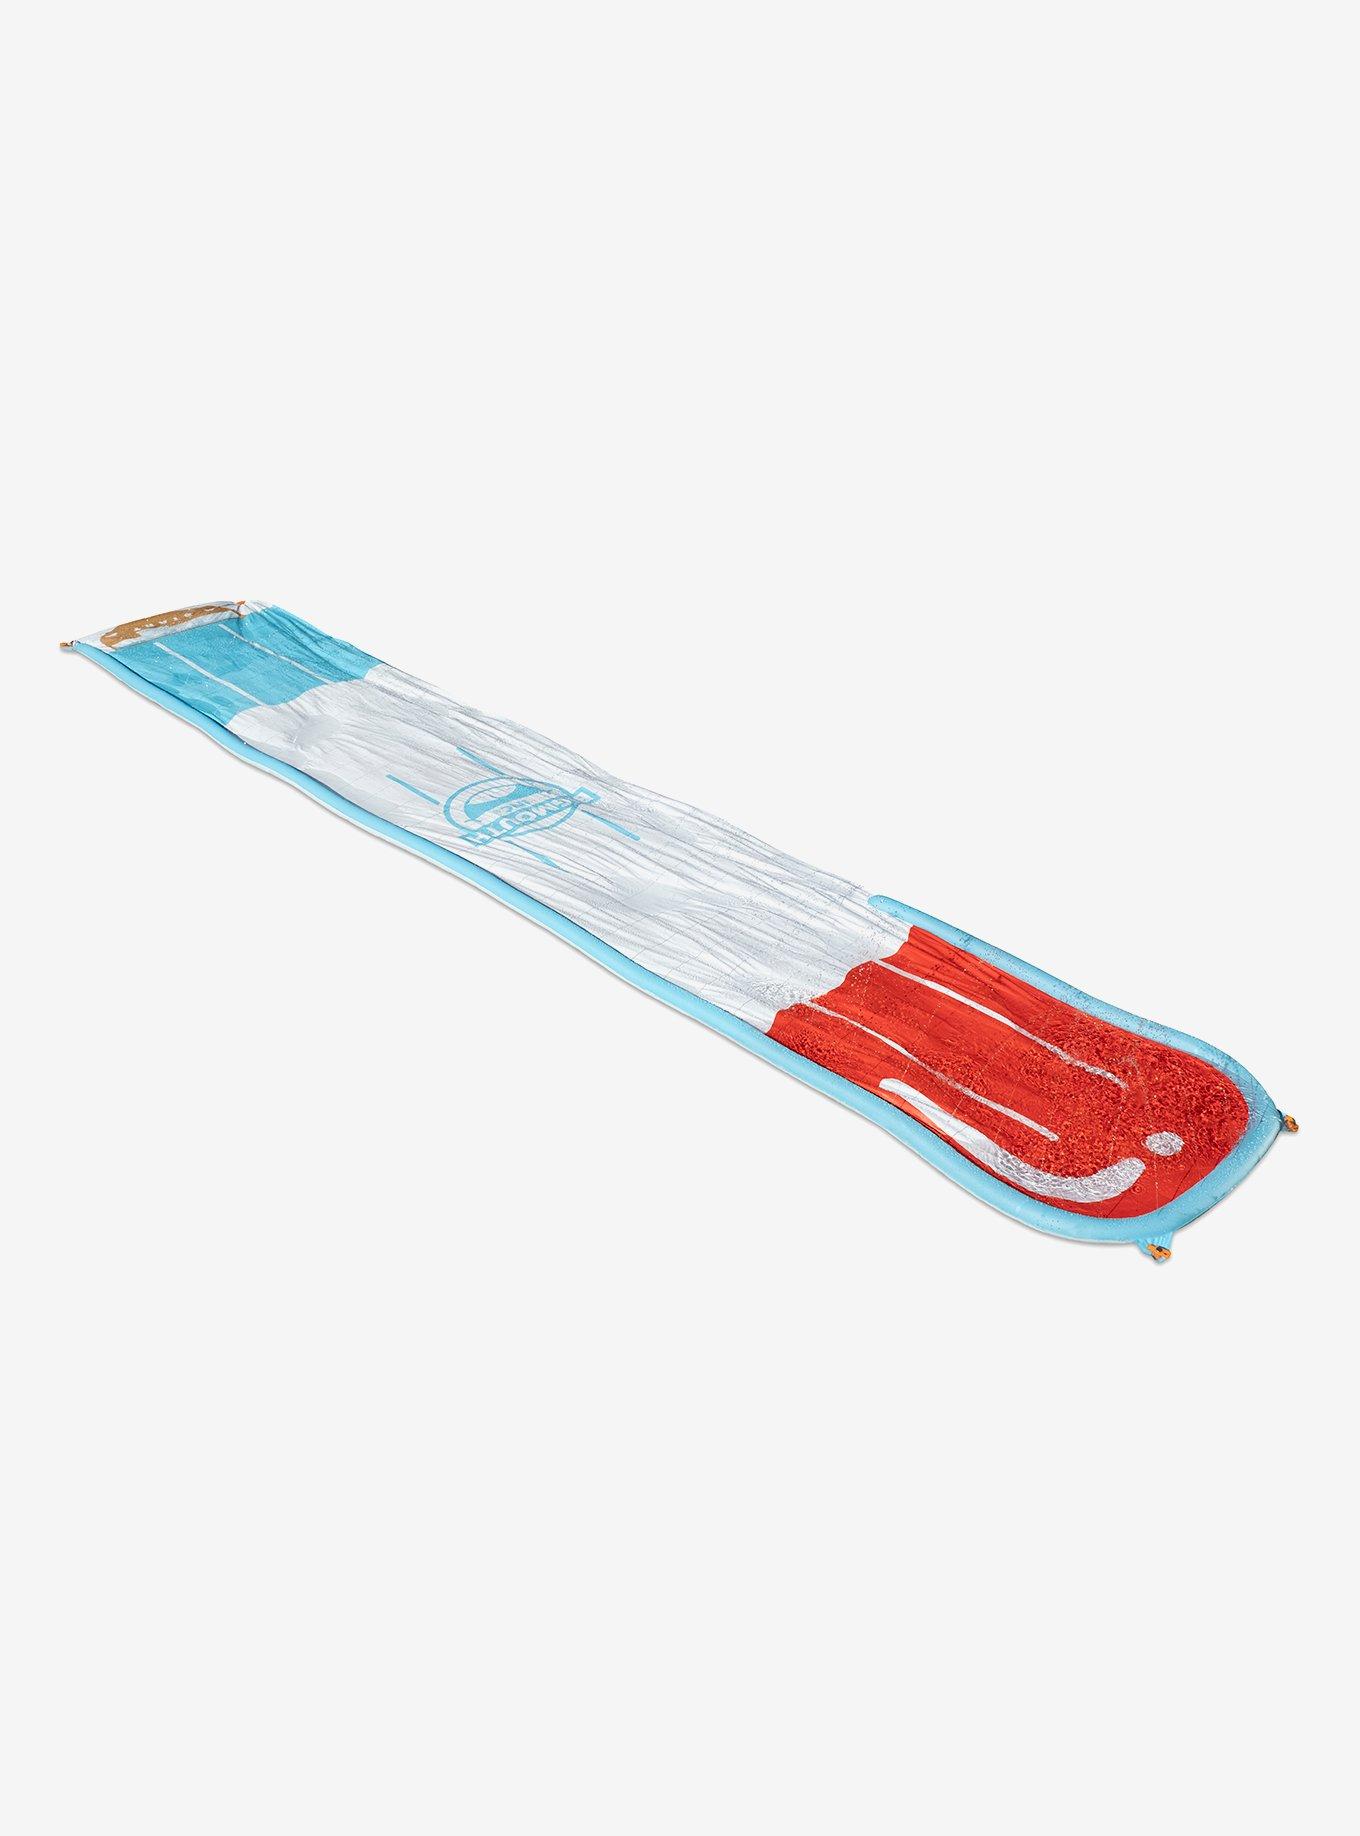 BigMouth Splash Slides Red White And Blue Pop Slide Water Toy